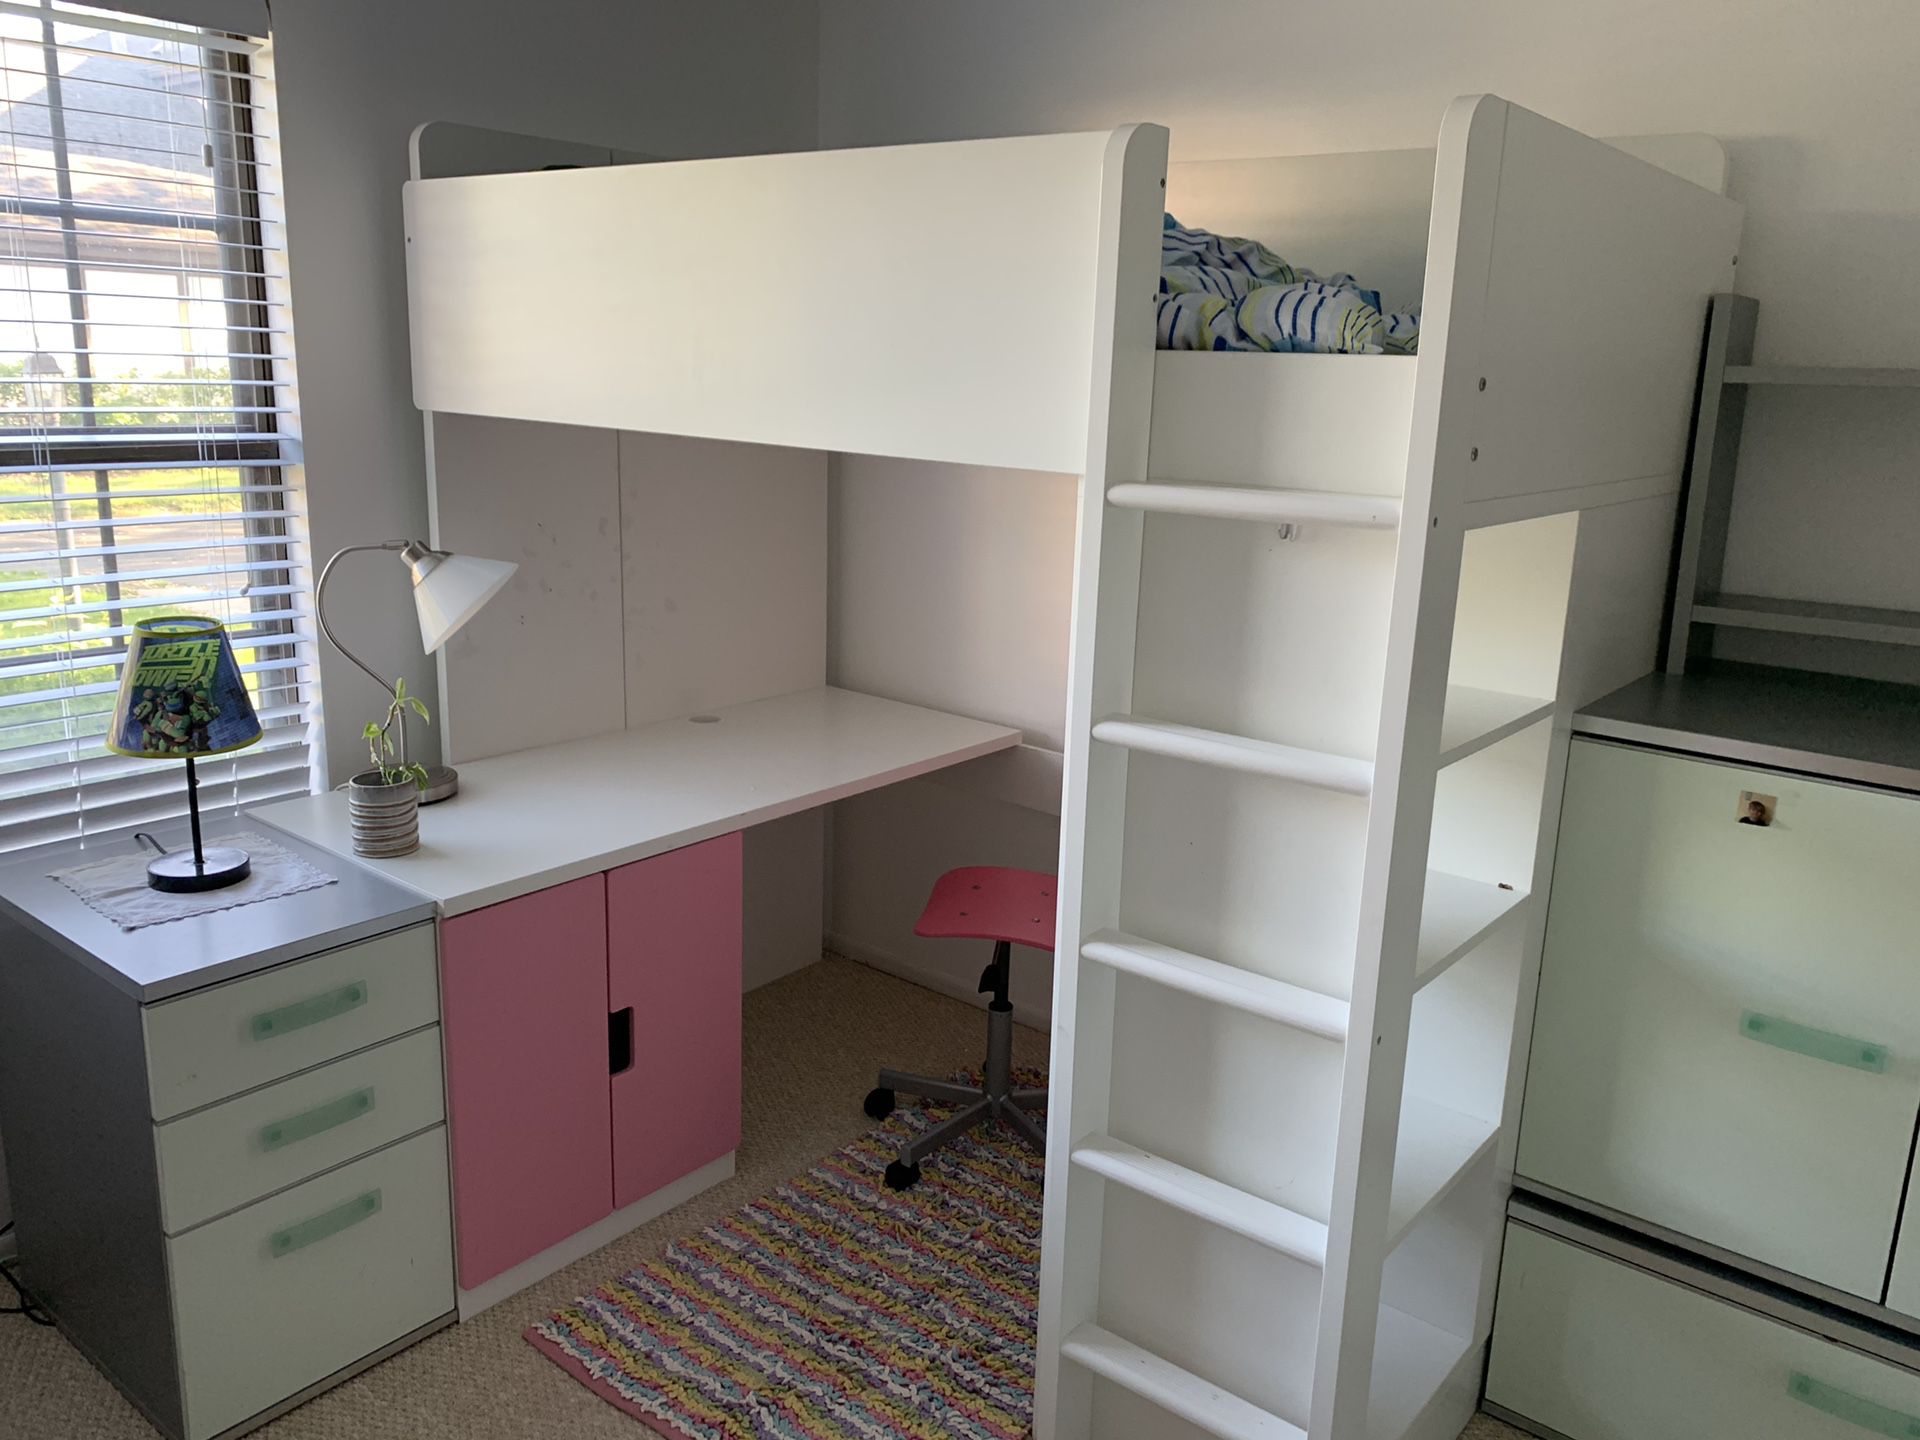 IKEA lofted twin bed/desk/bookshelf pink